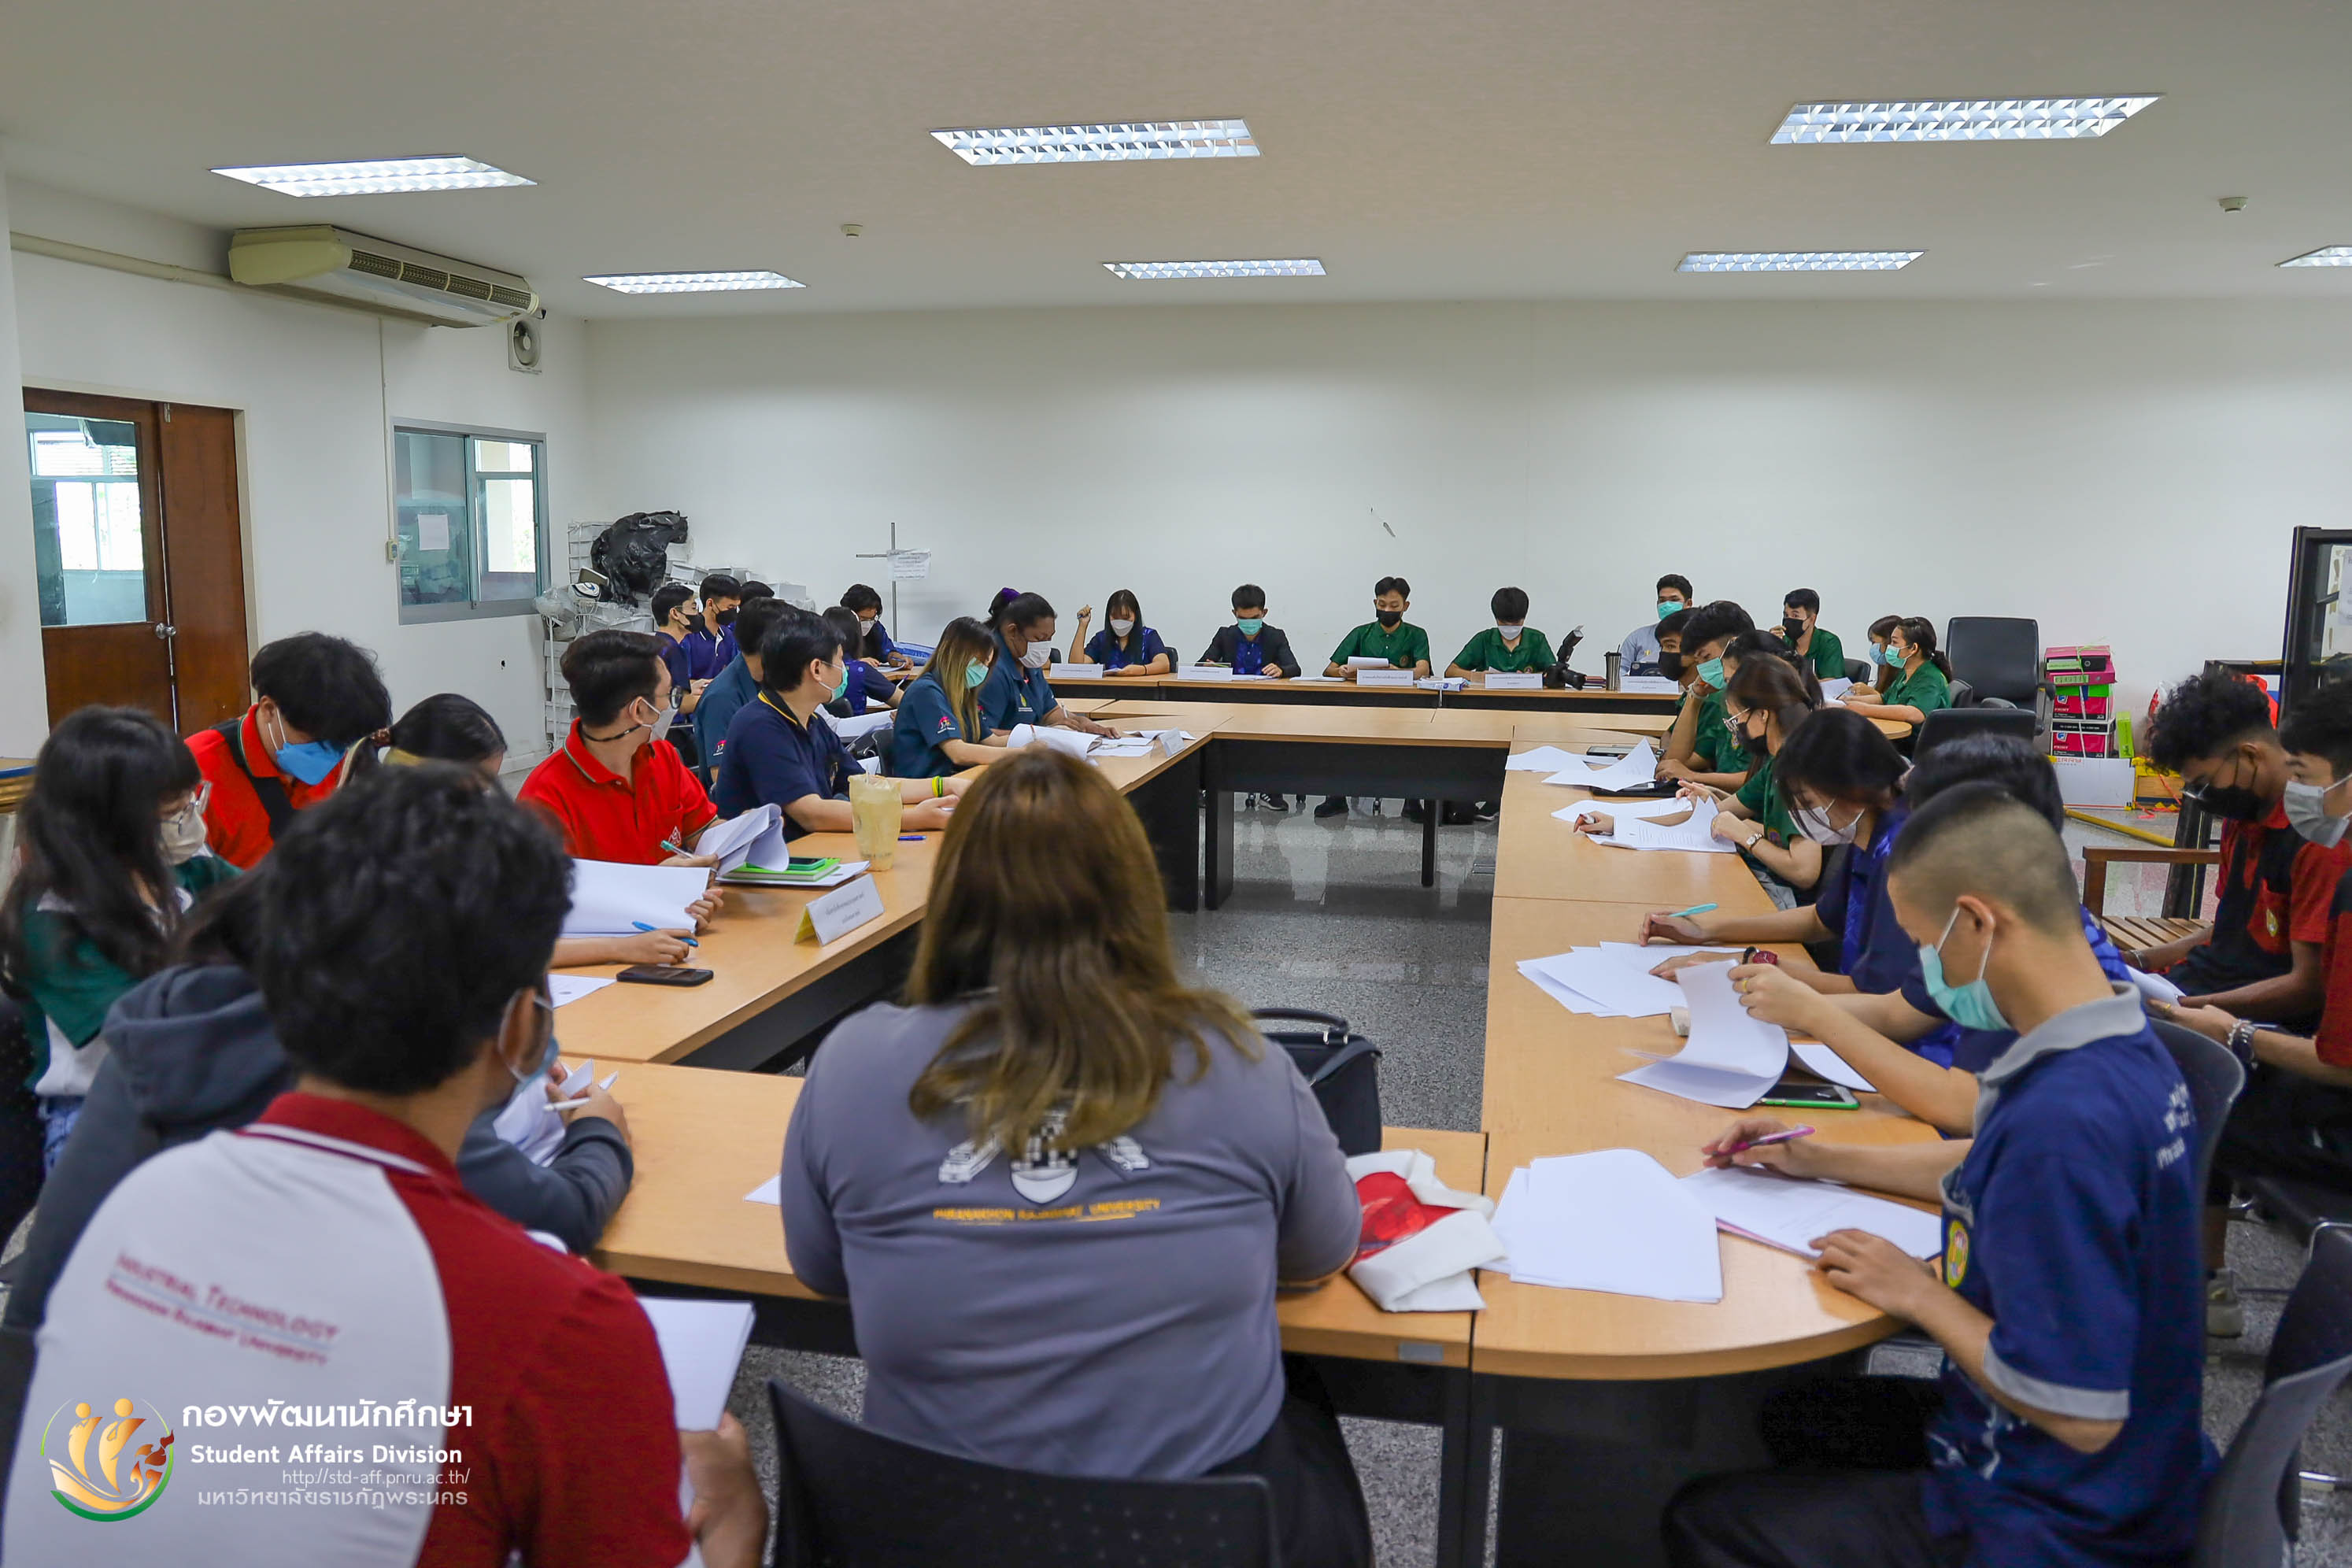 7 มิถุนายน 2565 องค์การบริหารนักศึกษาภาคปกติ จัดให้มีการประชุมเพื่อเตรียมความพร้อมการจัดกิจกรรมนักศึกษาใหม่ ประจำปีการศึกษา 2565 ณ ห้องประชุมชั้น 4 อาคารฝึกประสบการณ์วิชาชีพเชิงบูรณาการ